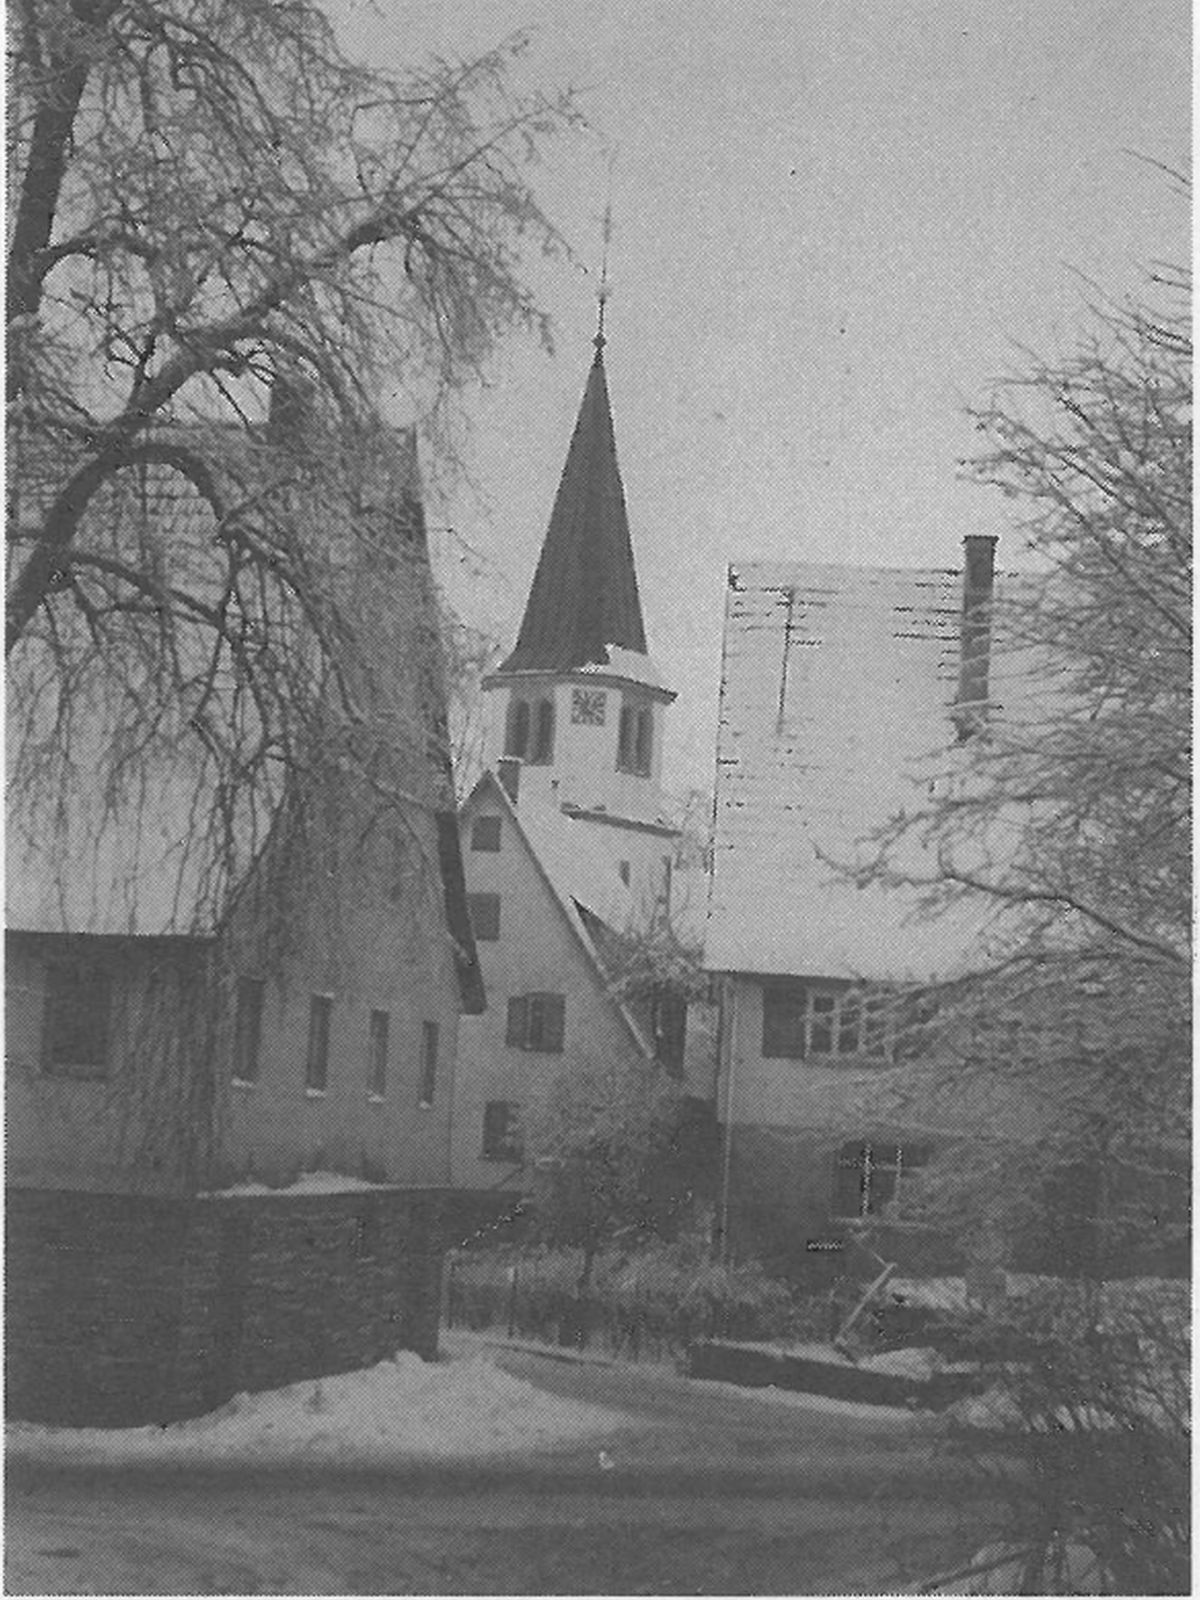  Schopflocher Skizzen Altes Foto der Gemeinde - Bild wird mit einem klick vergrößert 